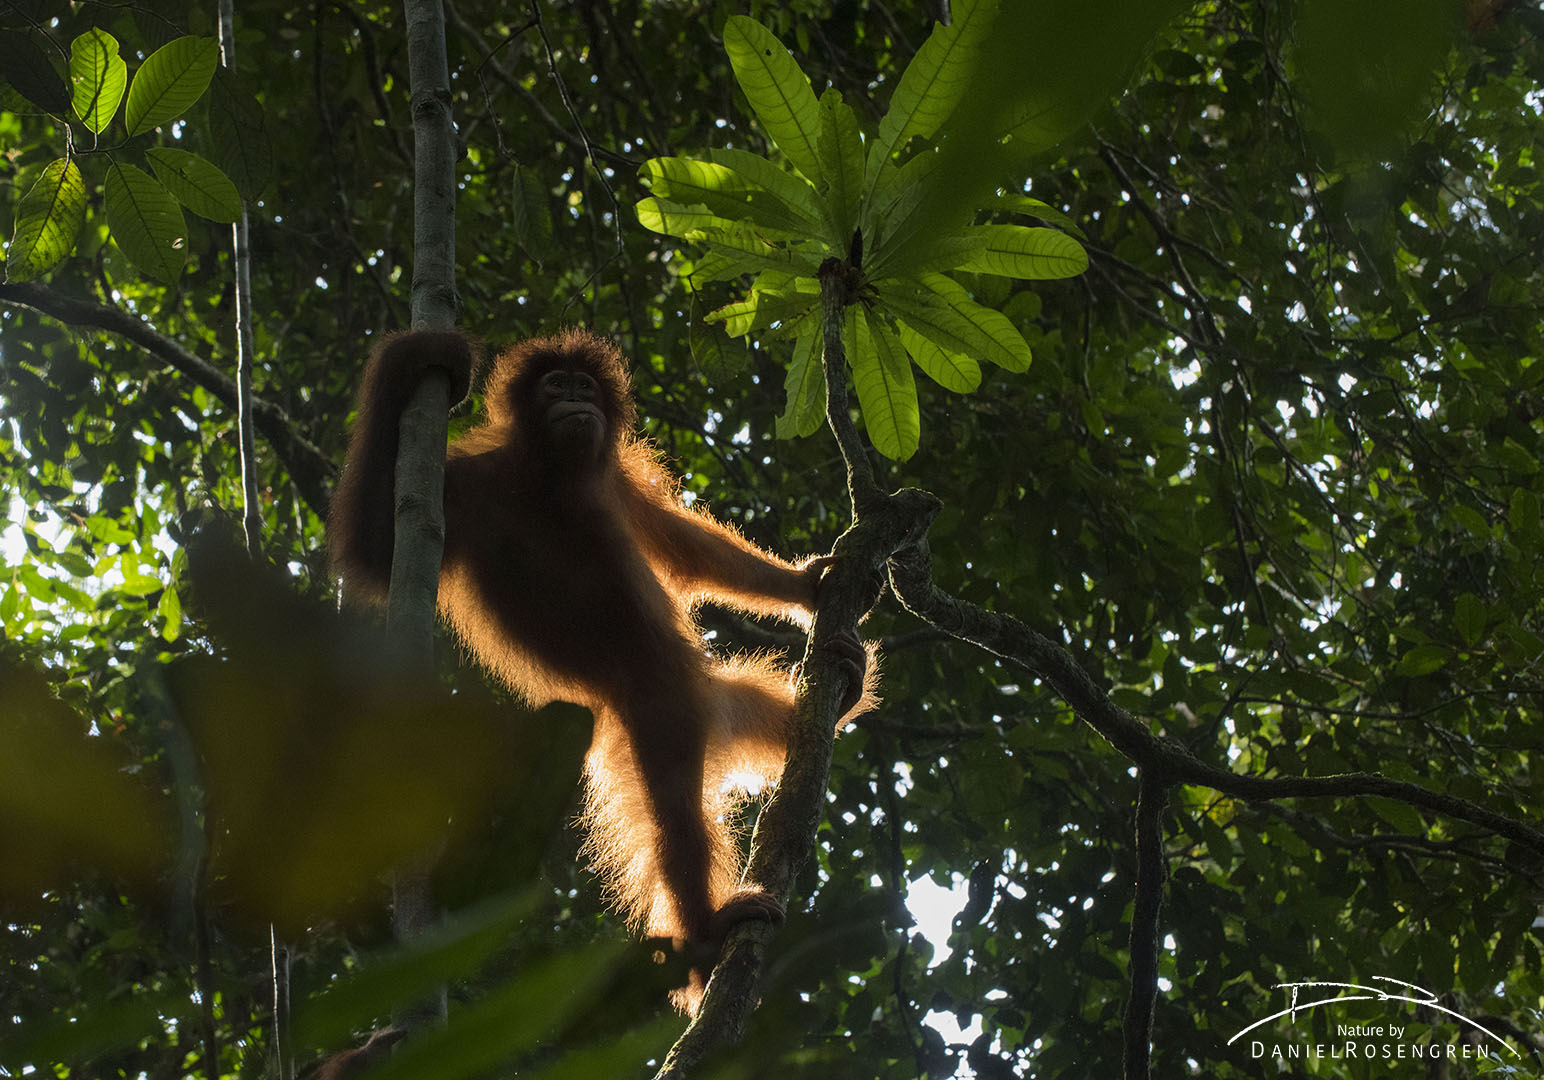 The sun is making the hairs of this Orang-utan to glow. © Daniel Rosengren